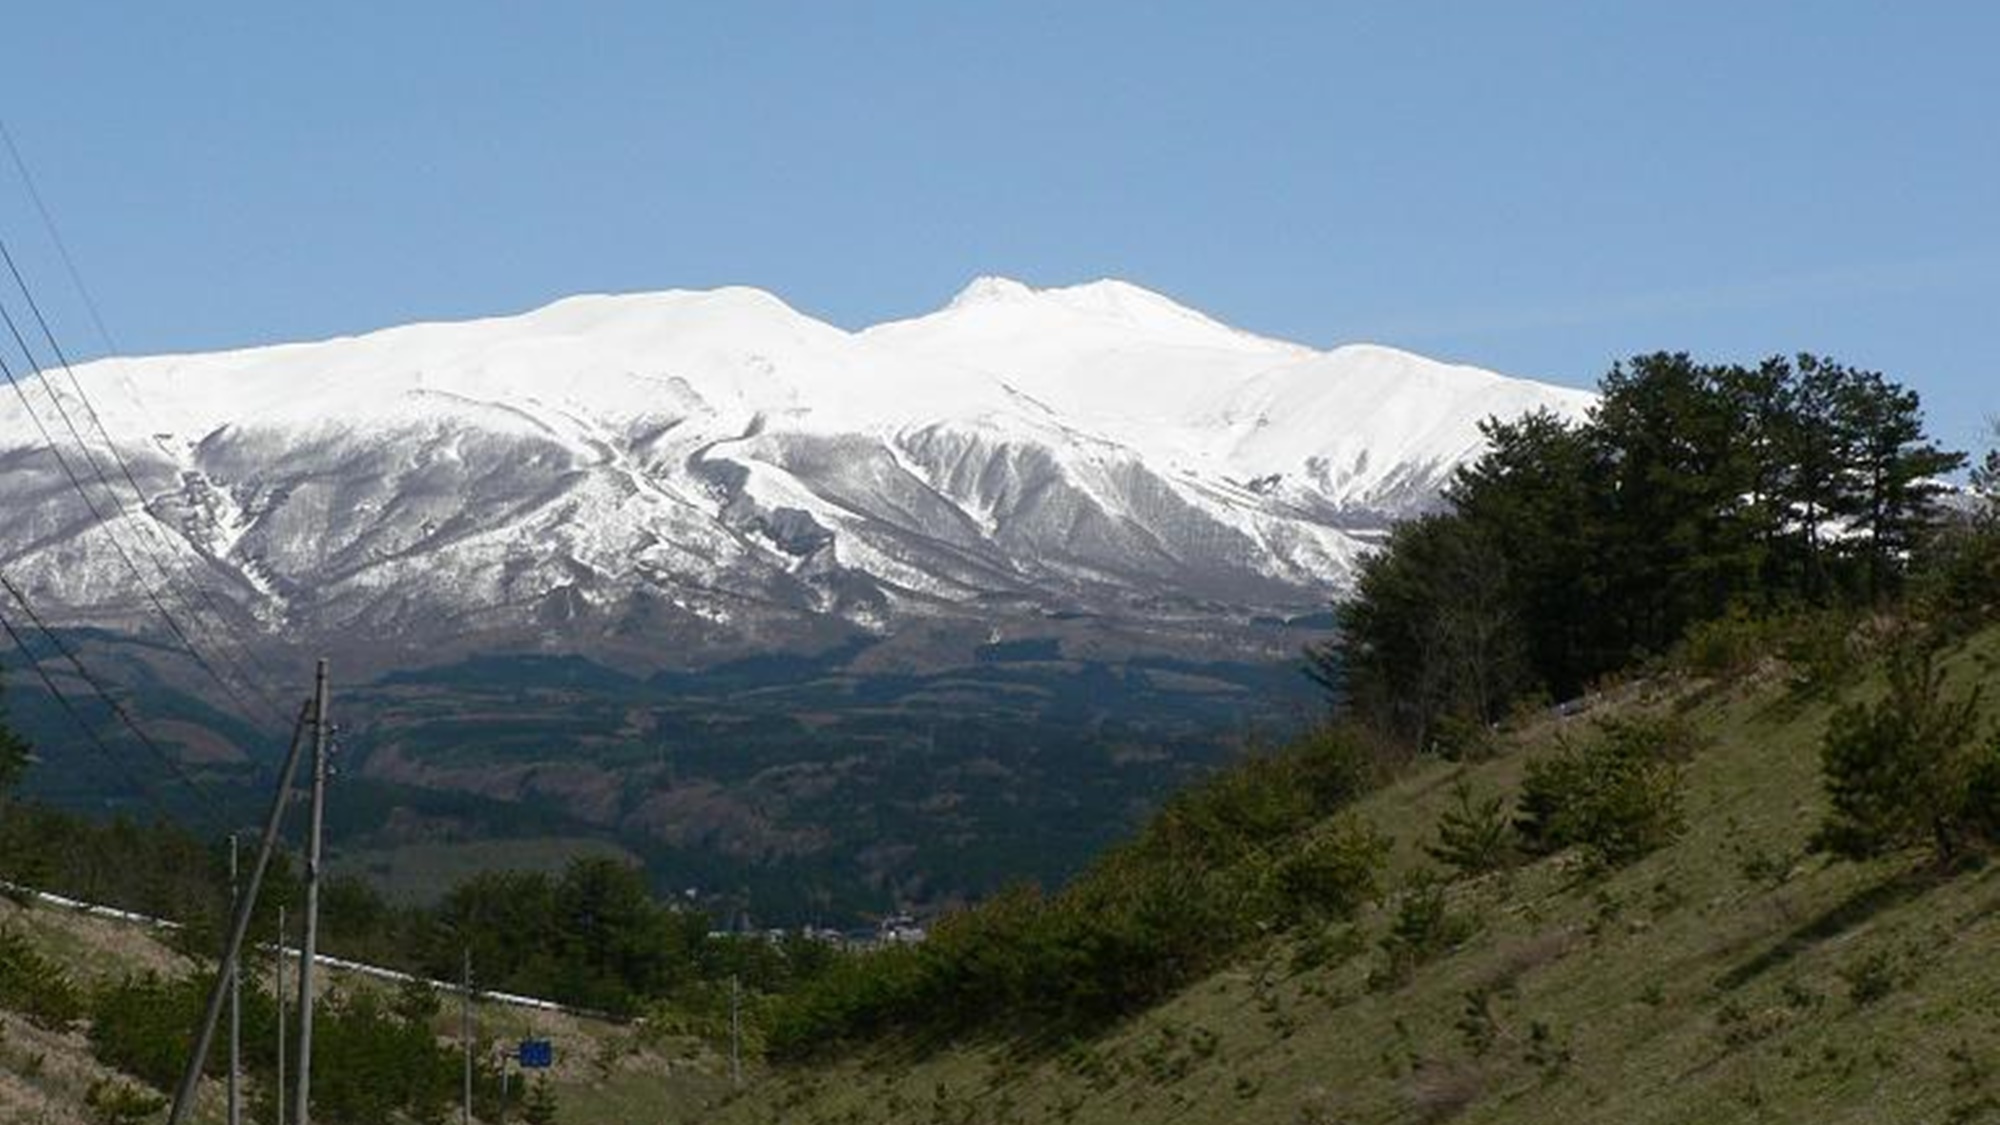 *【鳥海山】山頂に雪が積もる姿が富士山にそっくりな為、出羽富士（でわふじ）とも呼ば れています。